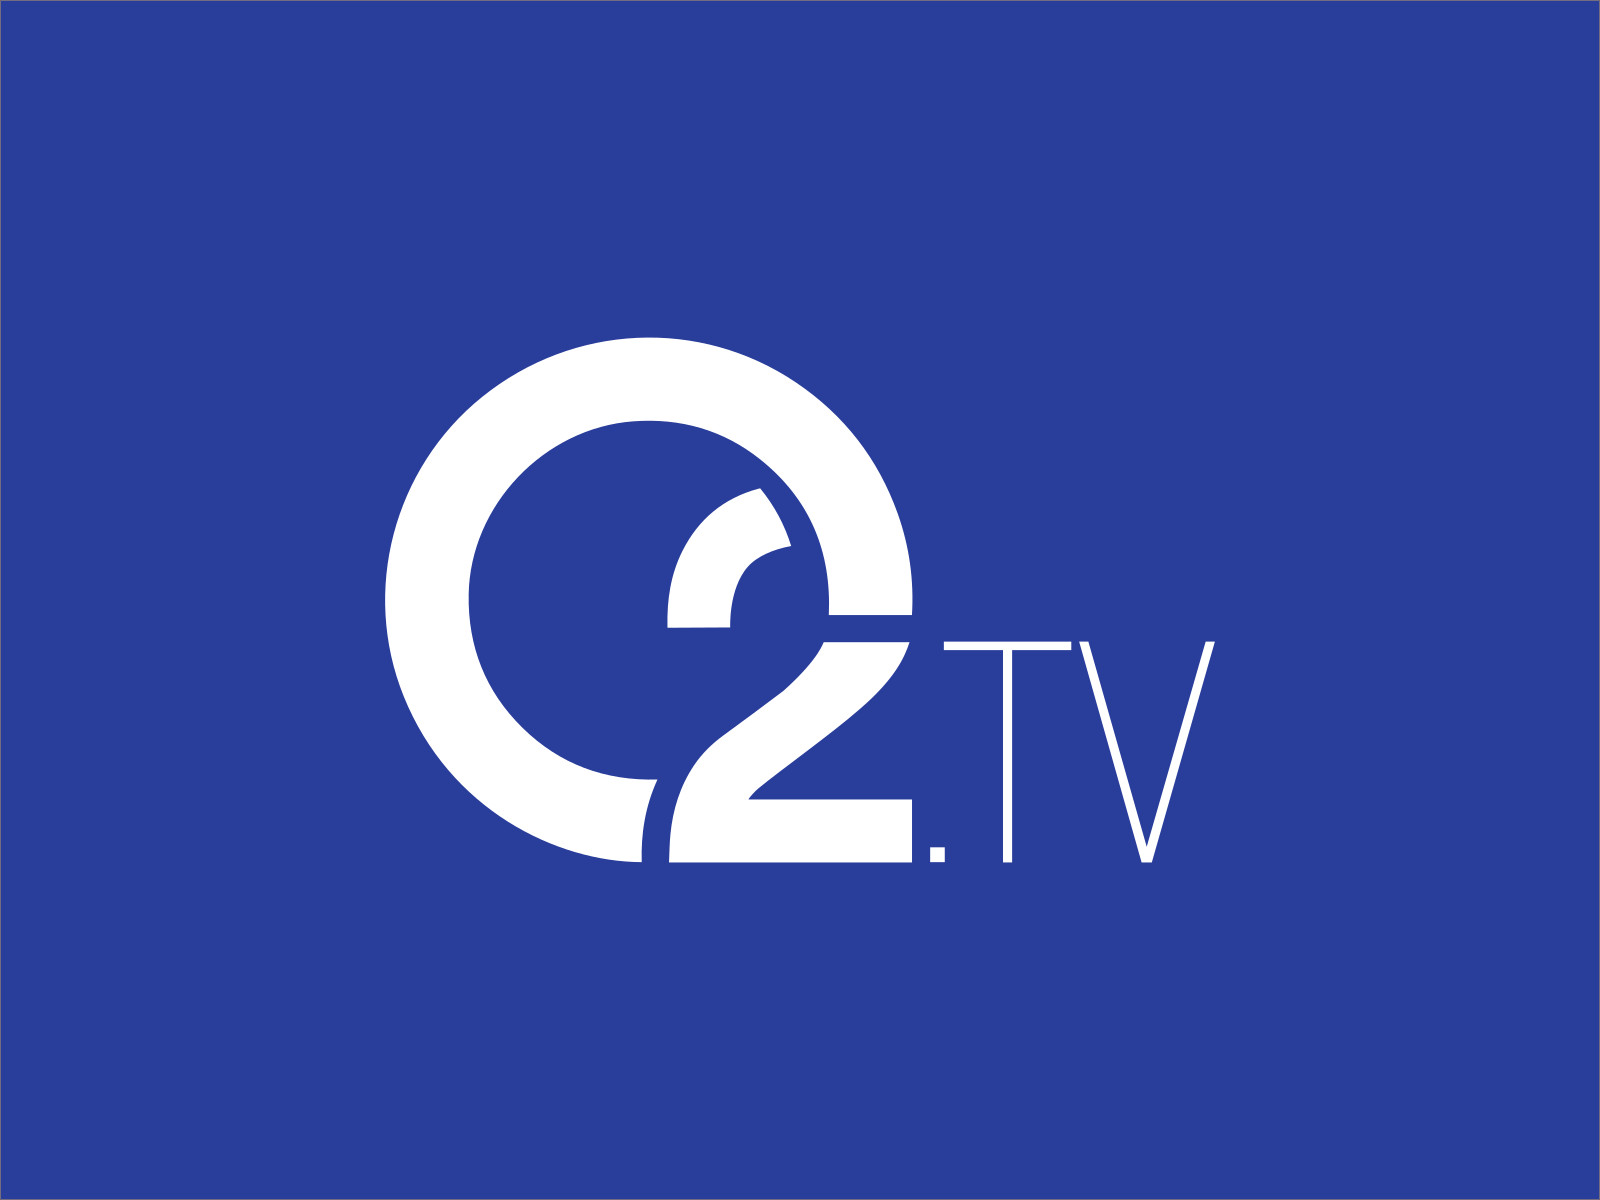 foto: O2 TV